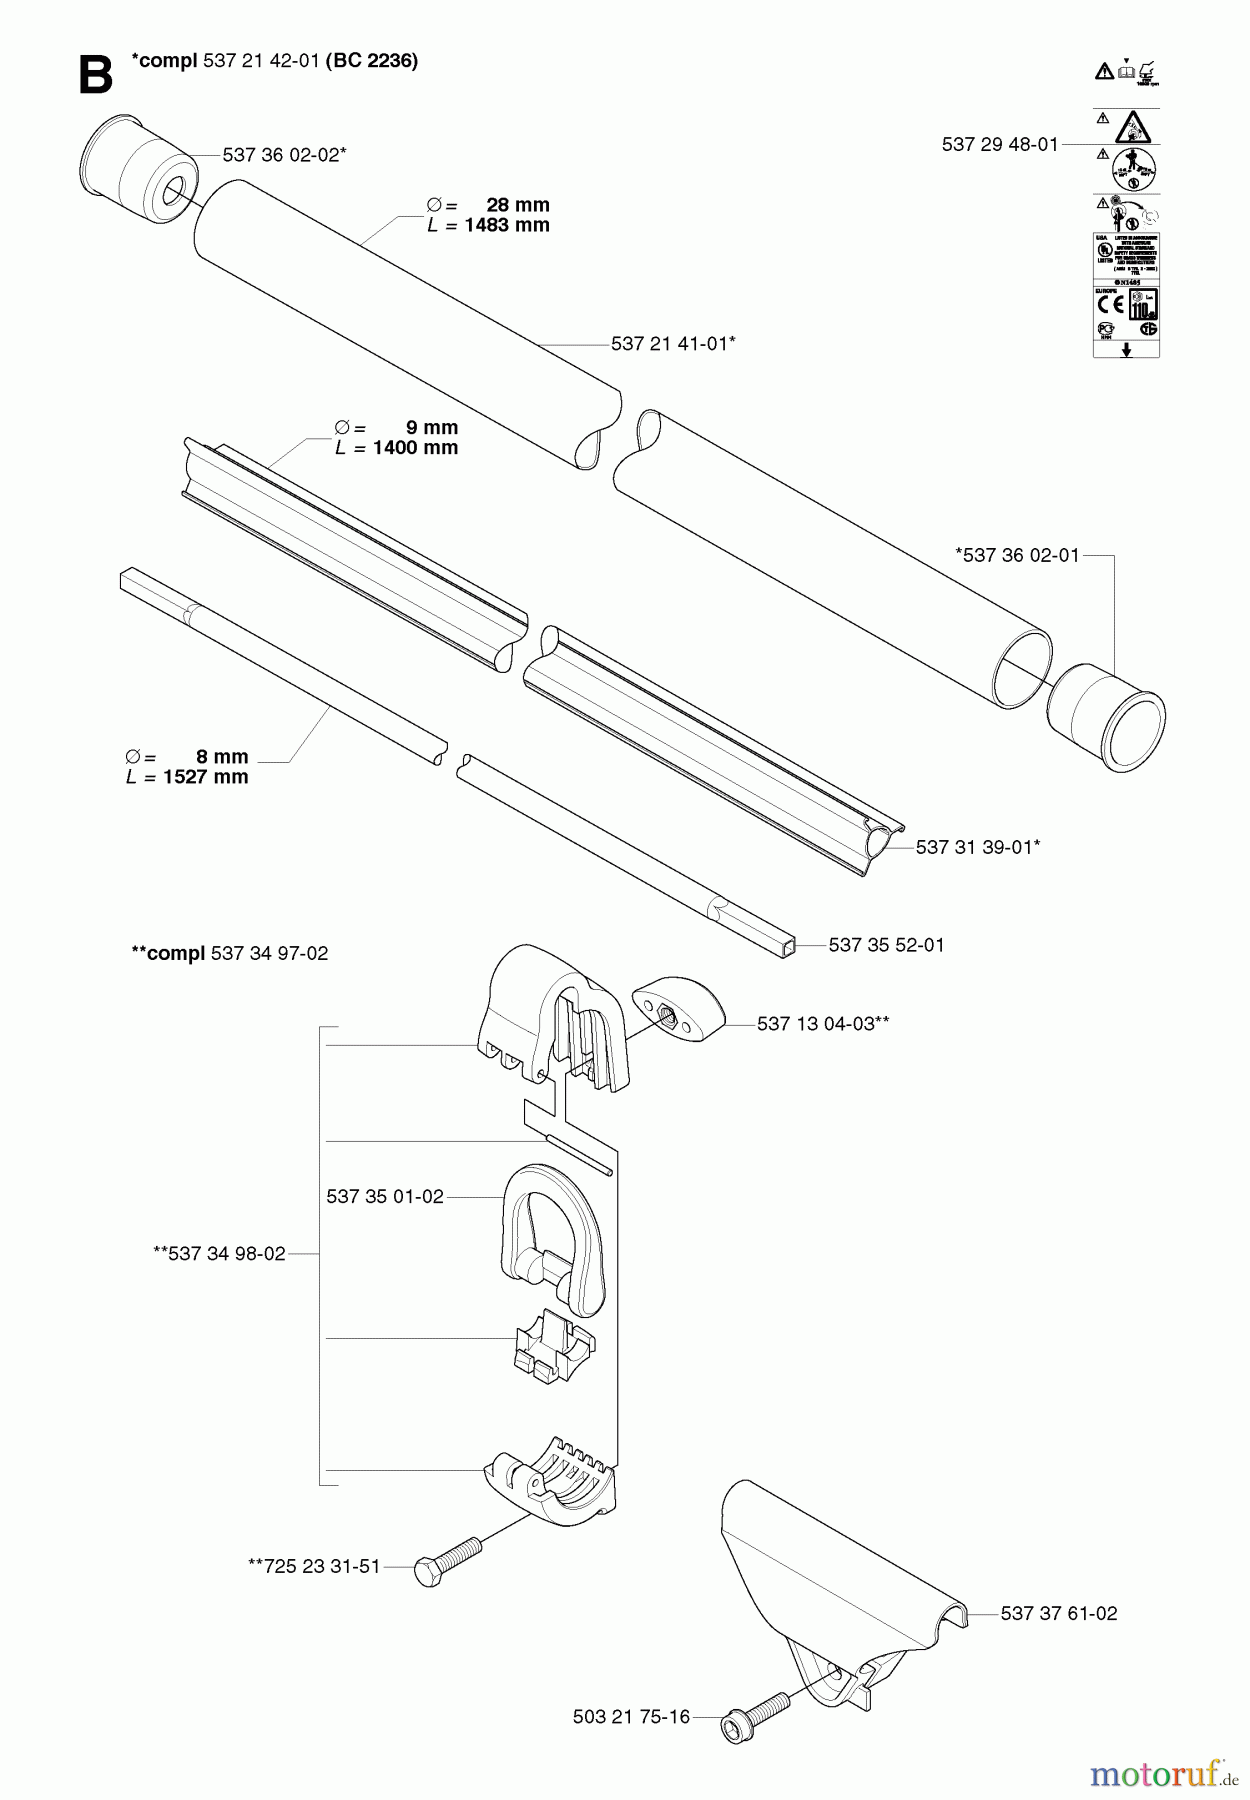  Jonsered Motorsensen, Trimmer GC2236 - Jonsered String/Brush Trimmer (2007-01) SHAFT #1